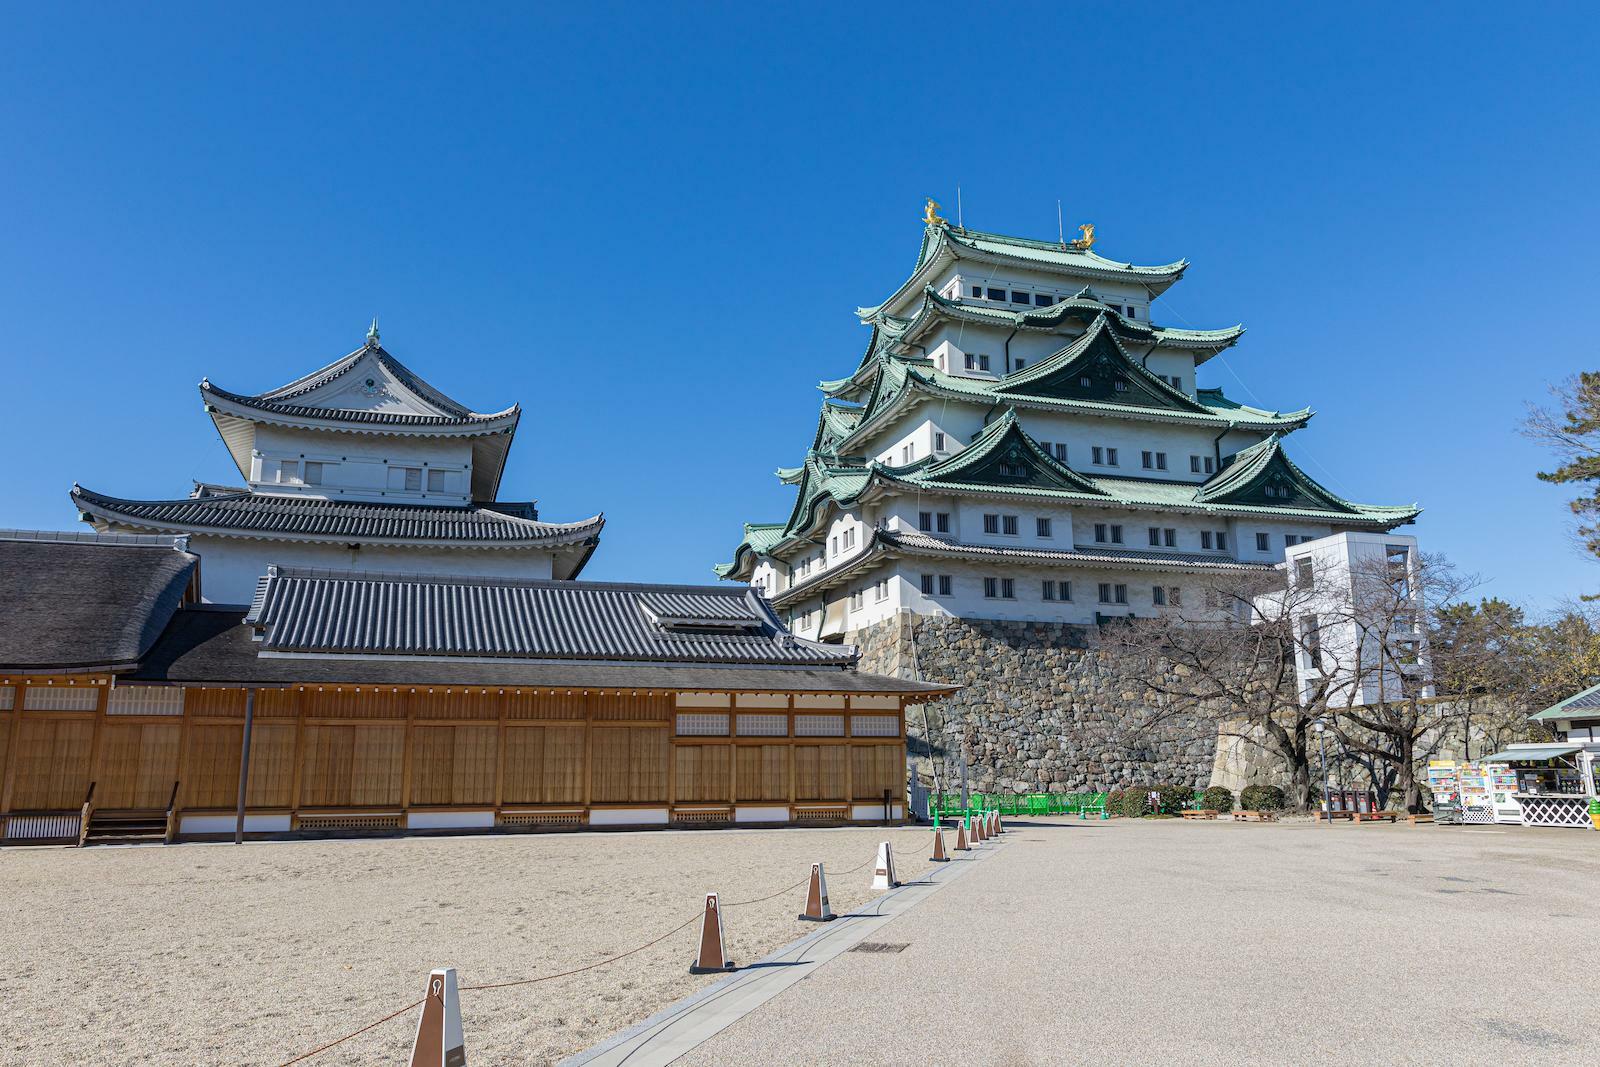 復元された現在の名古屋城。木曽檜が尾張繁栄の源泉でもあった